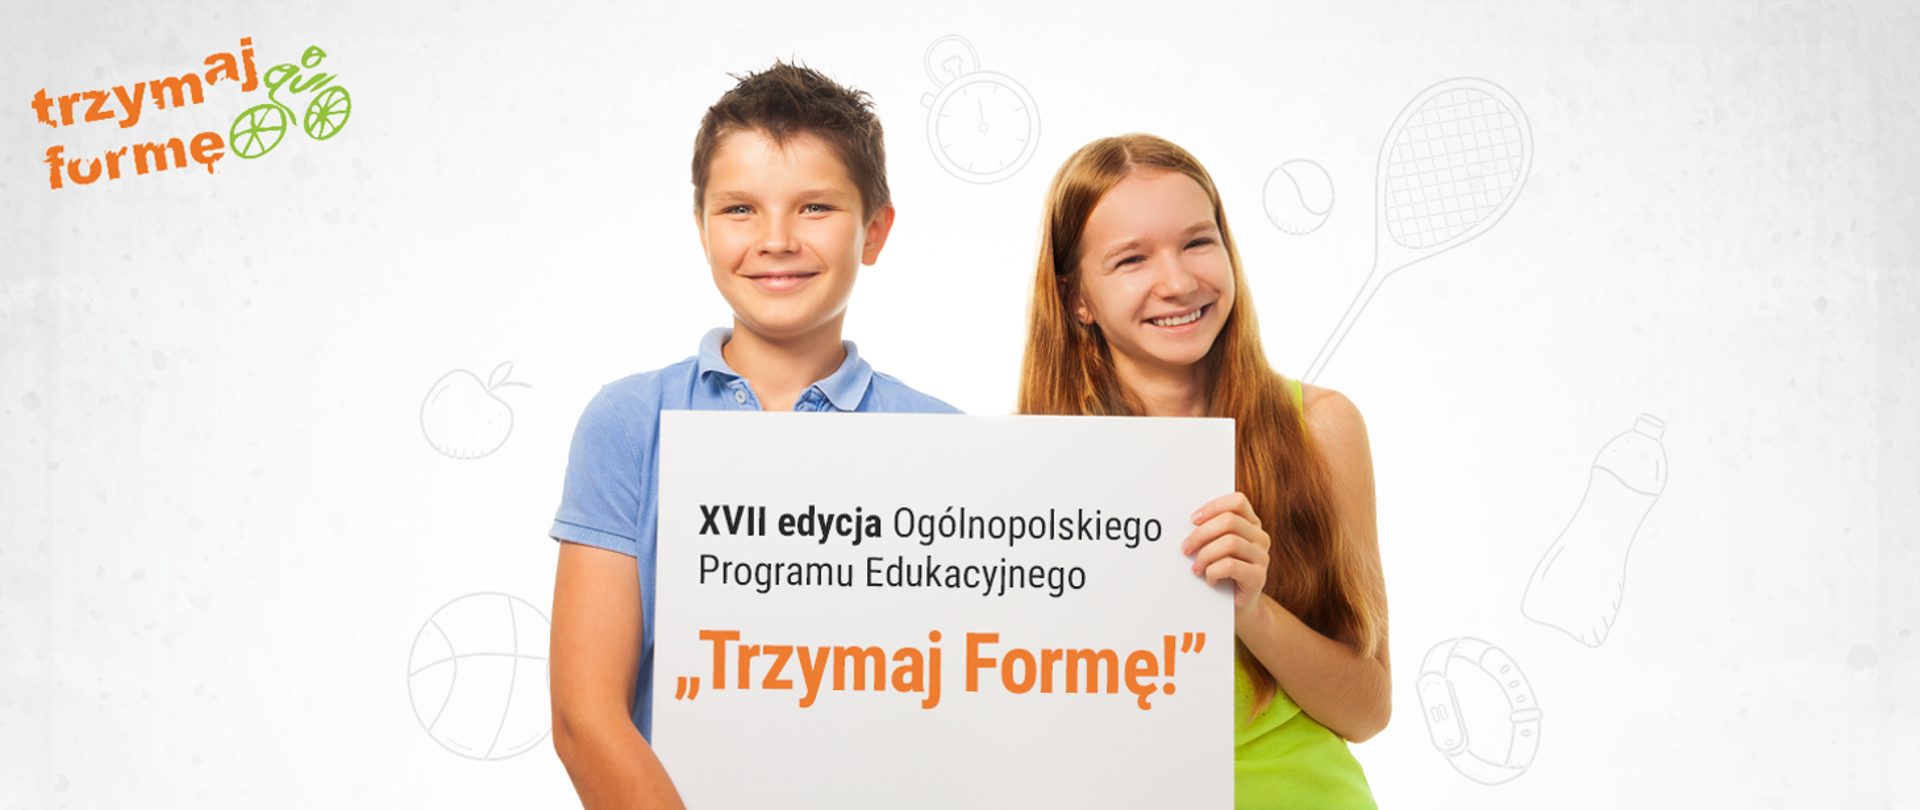 Na szarym tle w lewym górnym rogu znajduje się logo programy pomarańczowy napis Trzymaj formę i zielony chłopiec na rowerze. Na środku Chłopiec i dziewczynka trzymają plakat z napisem XVII edycja Ogólnopolskiego Programu Edukacyjnego "Trzymaj Formę!"